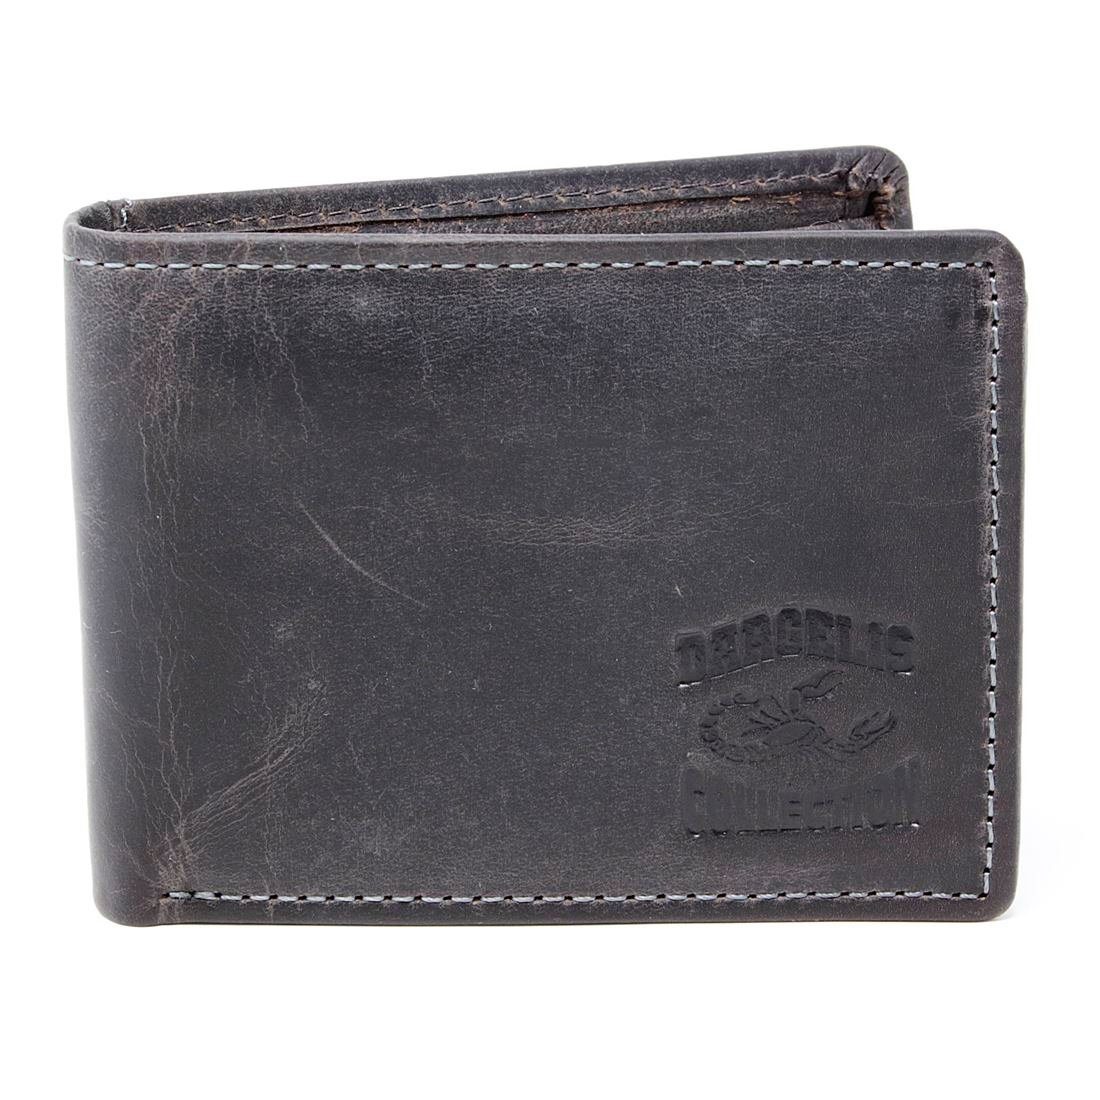 Männerbörse Geldbörse Münzfach Schutz mit SHG Lederbörse Portemonnaie, Herren Brieftasche Börse Leder RFID